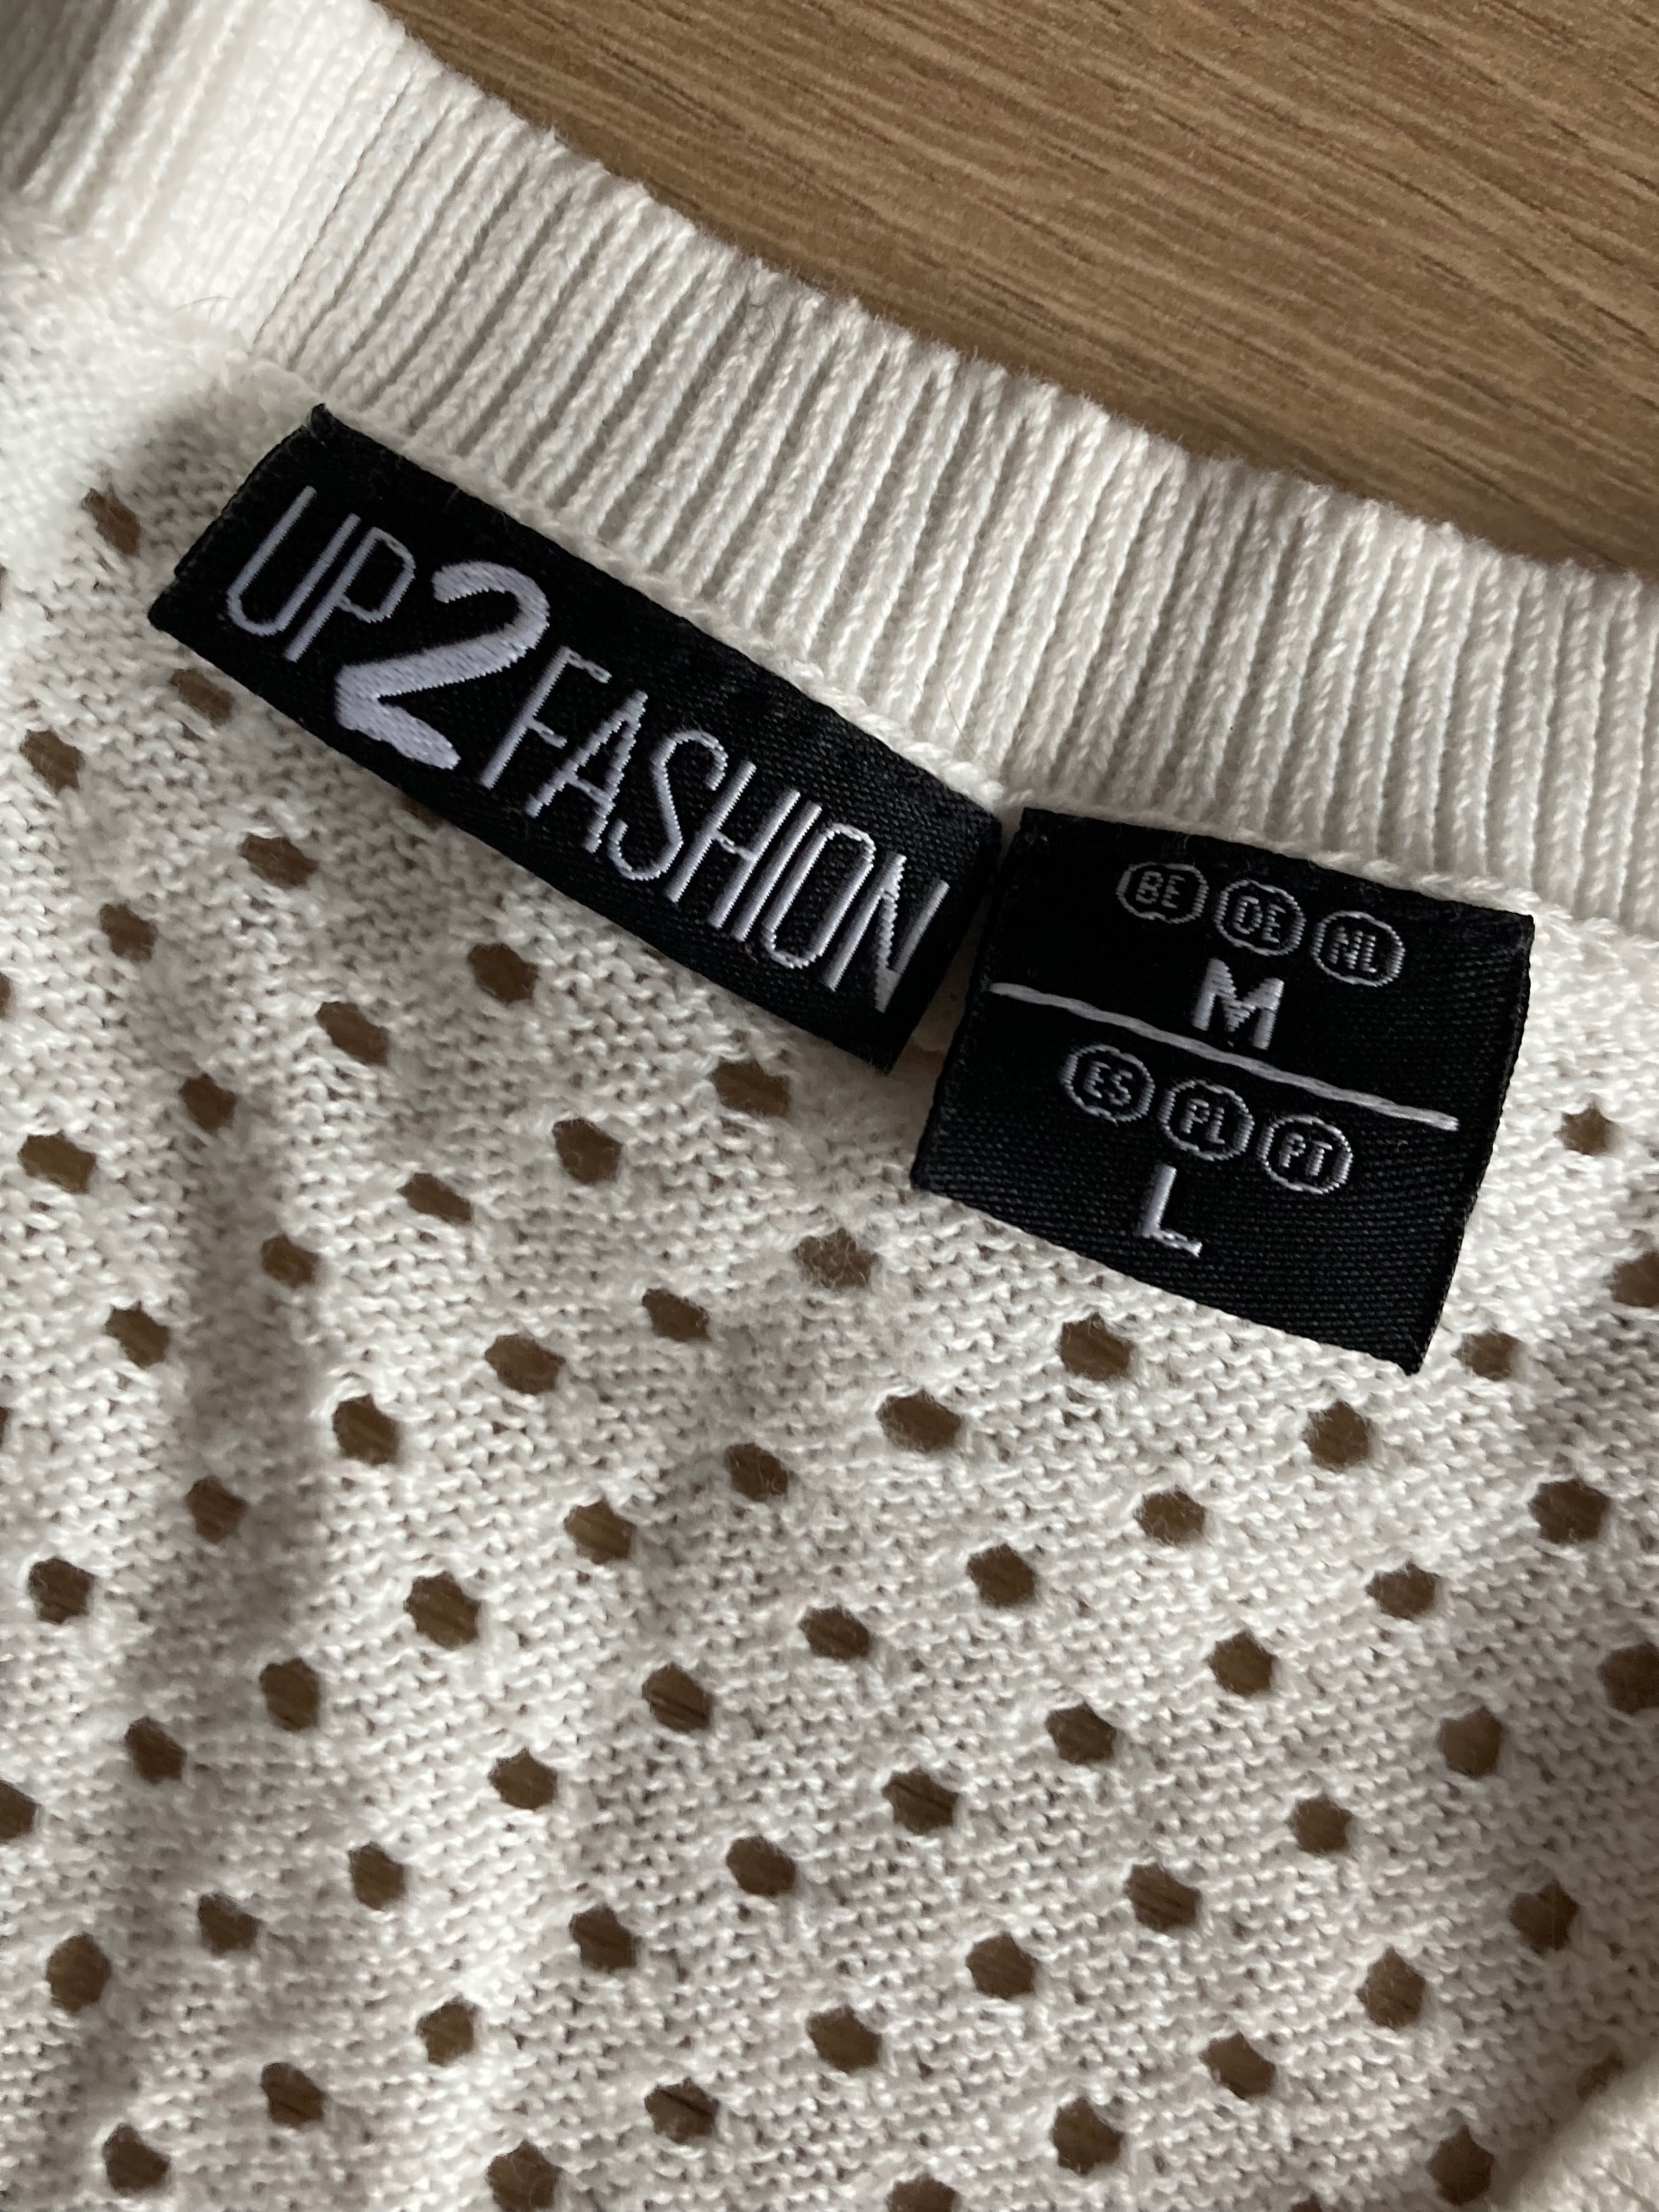 bluzka damska sweterek 40 L biała ażurowa 100% bawełna